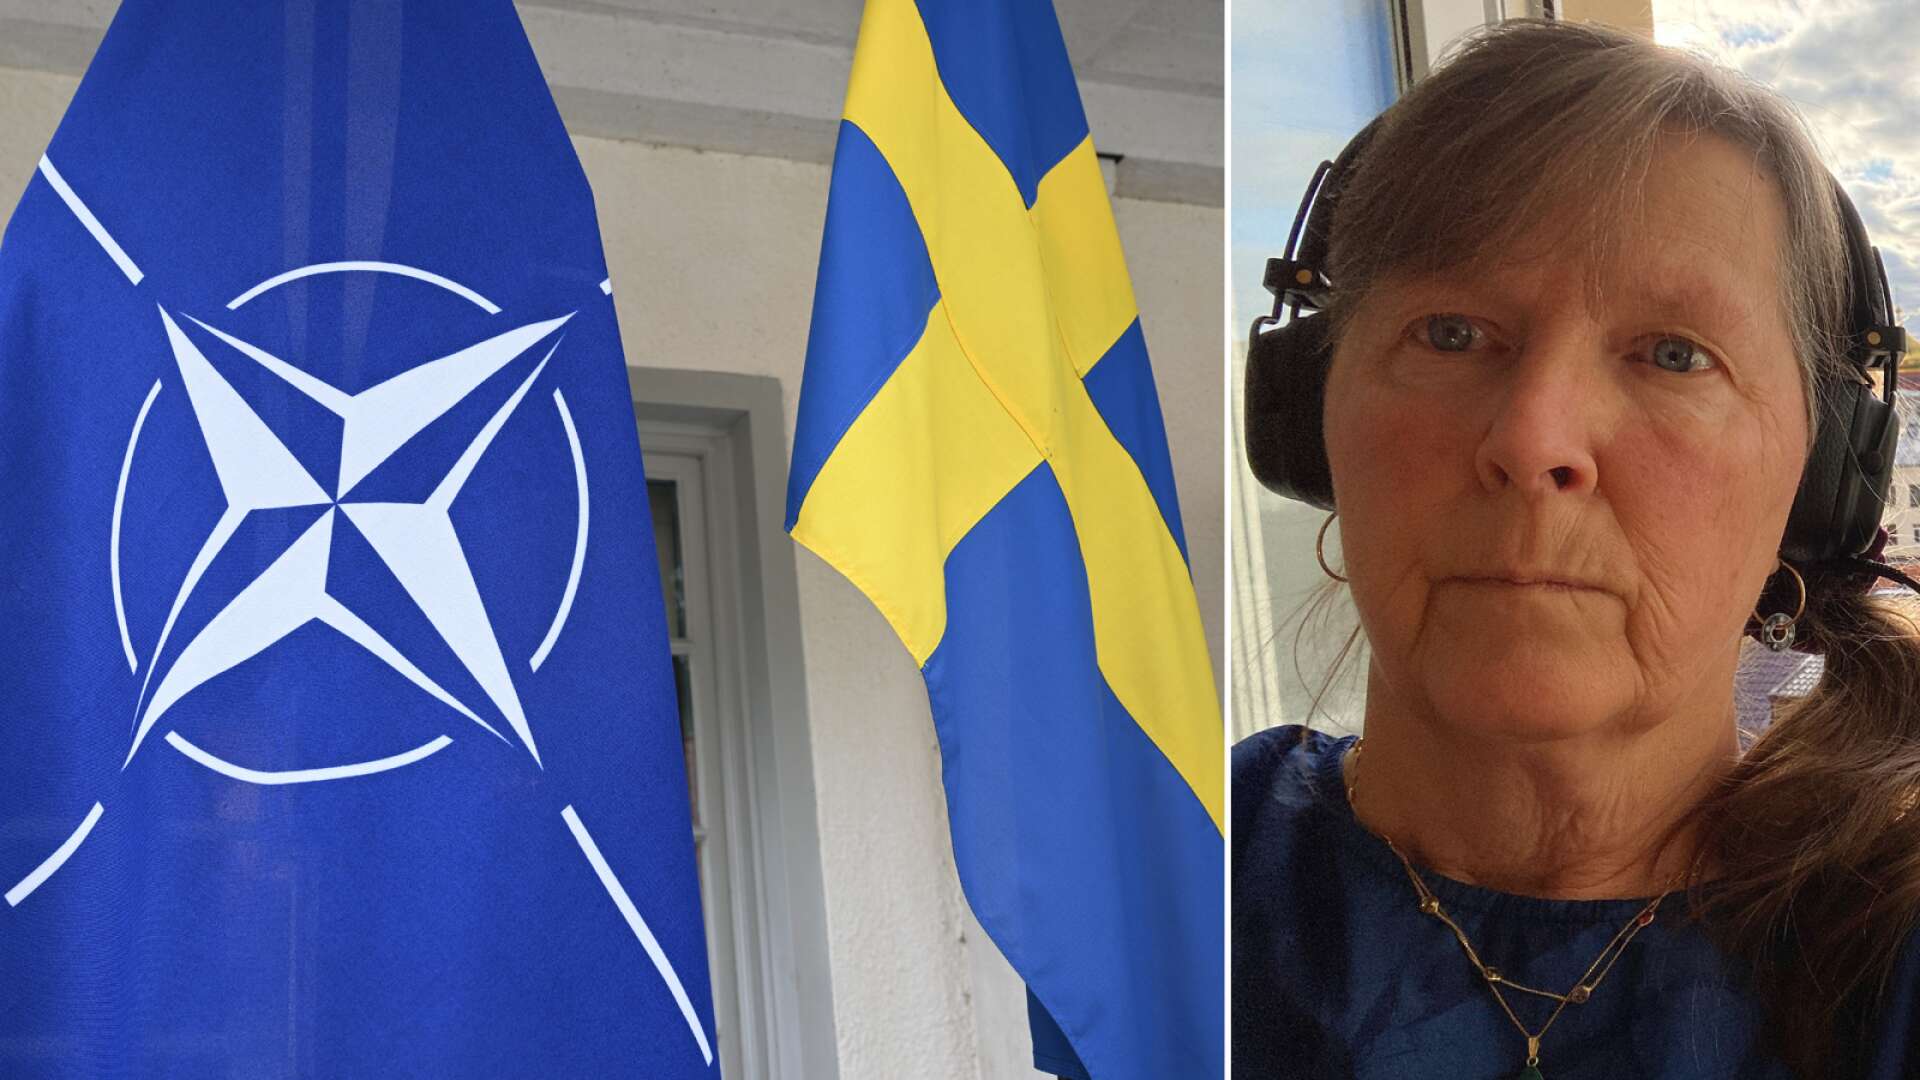 F7: ”Vår förmåga att försvara Sverige ökar”